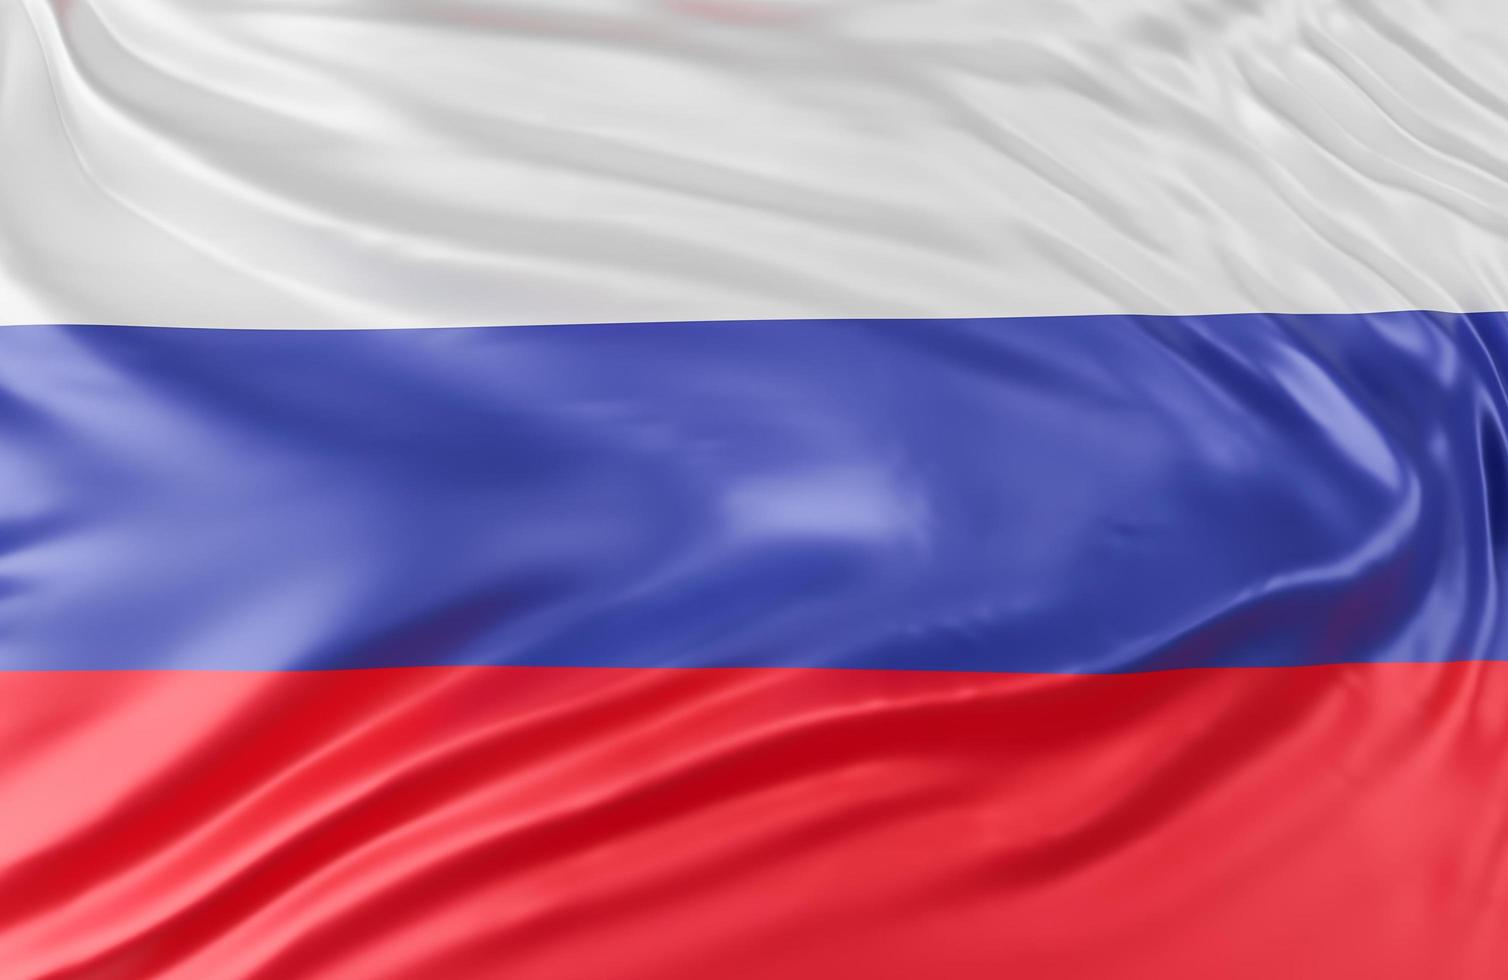 linda onda de bandeira da federação russa close-up no fundo do banner com espaço de cópia., modelo 3d e ilustração. foto